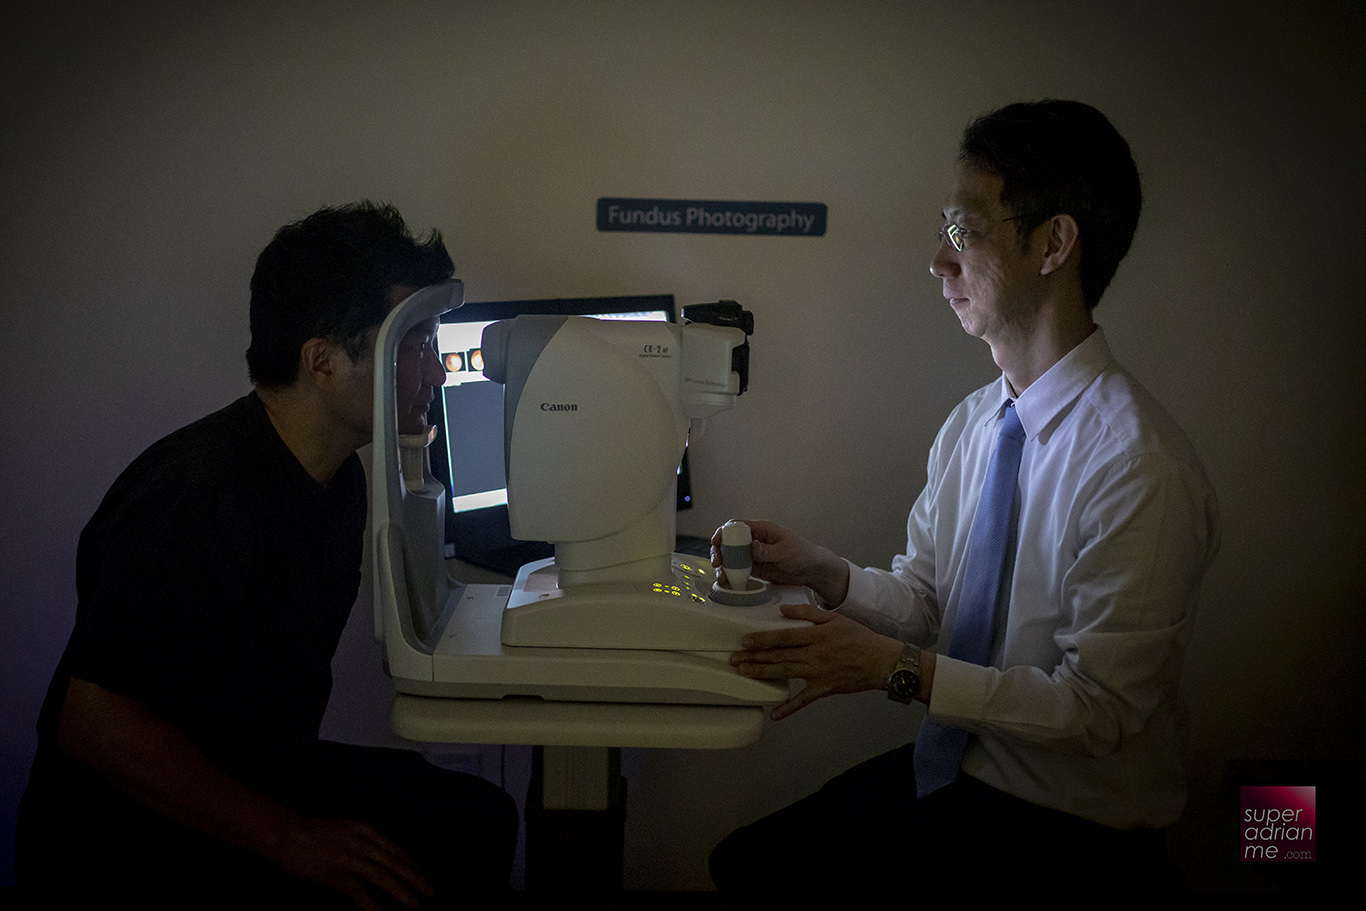 Go through a thorough eye examination at W Optics